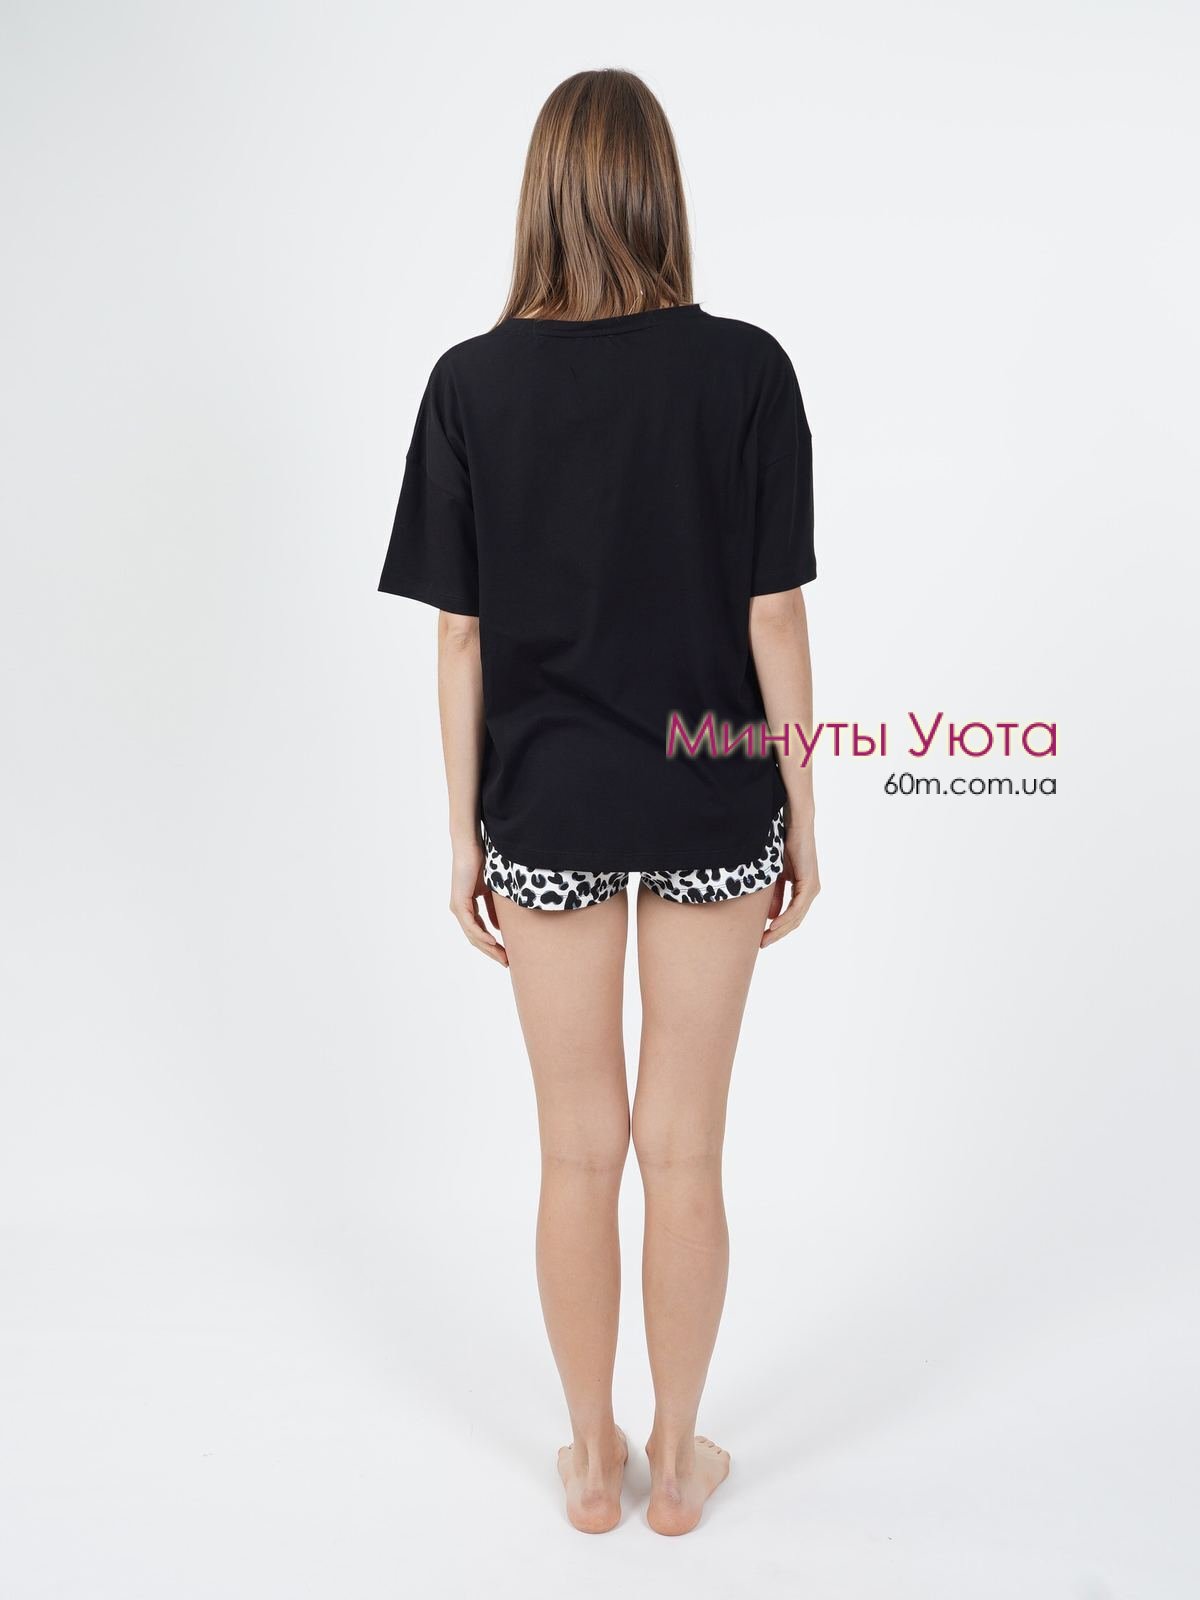 Женская пижама с футболкой свободного кроя черного цвета и шортами  Vienetta Secret